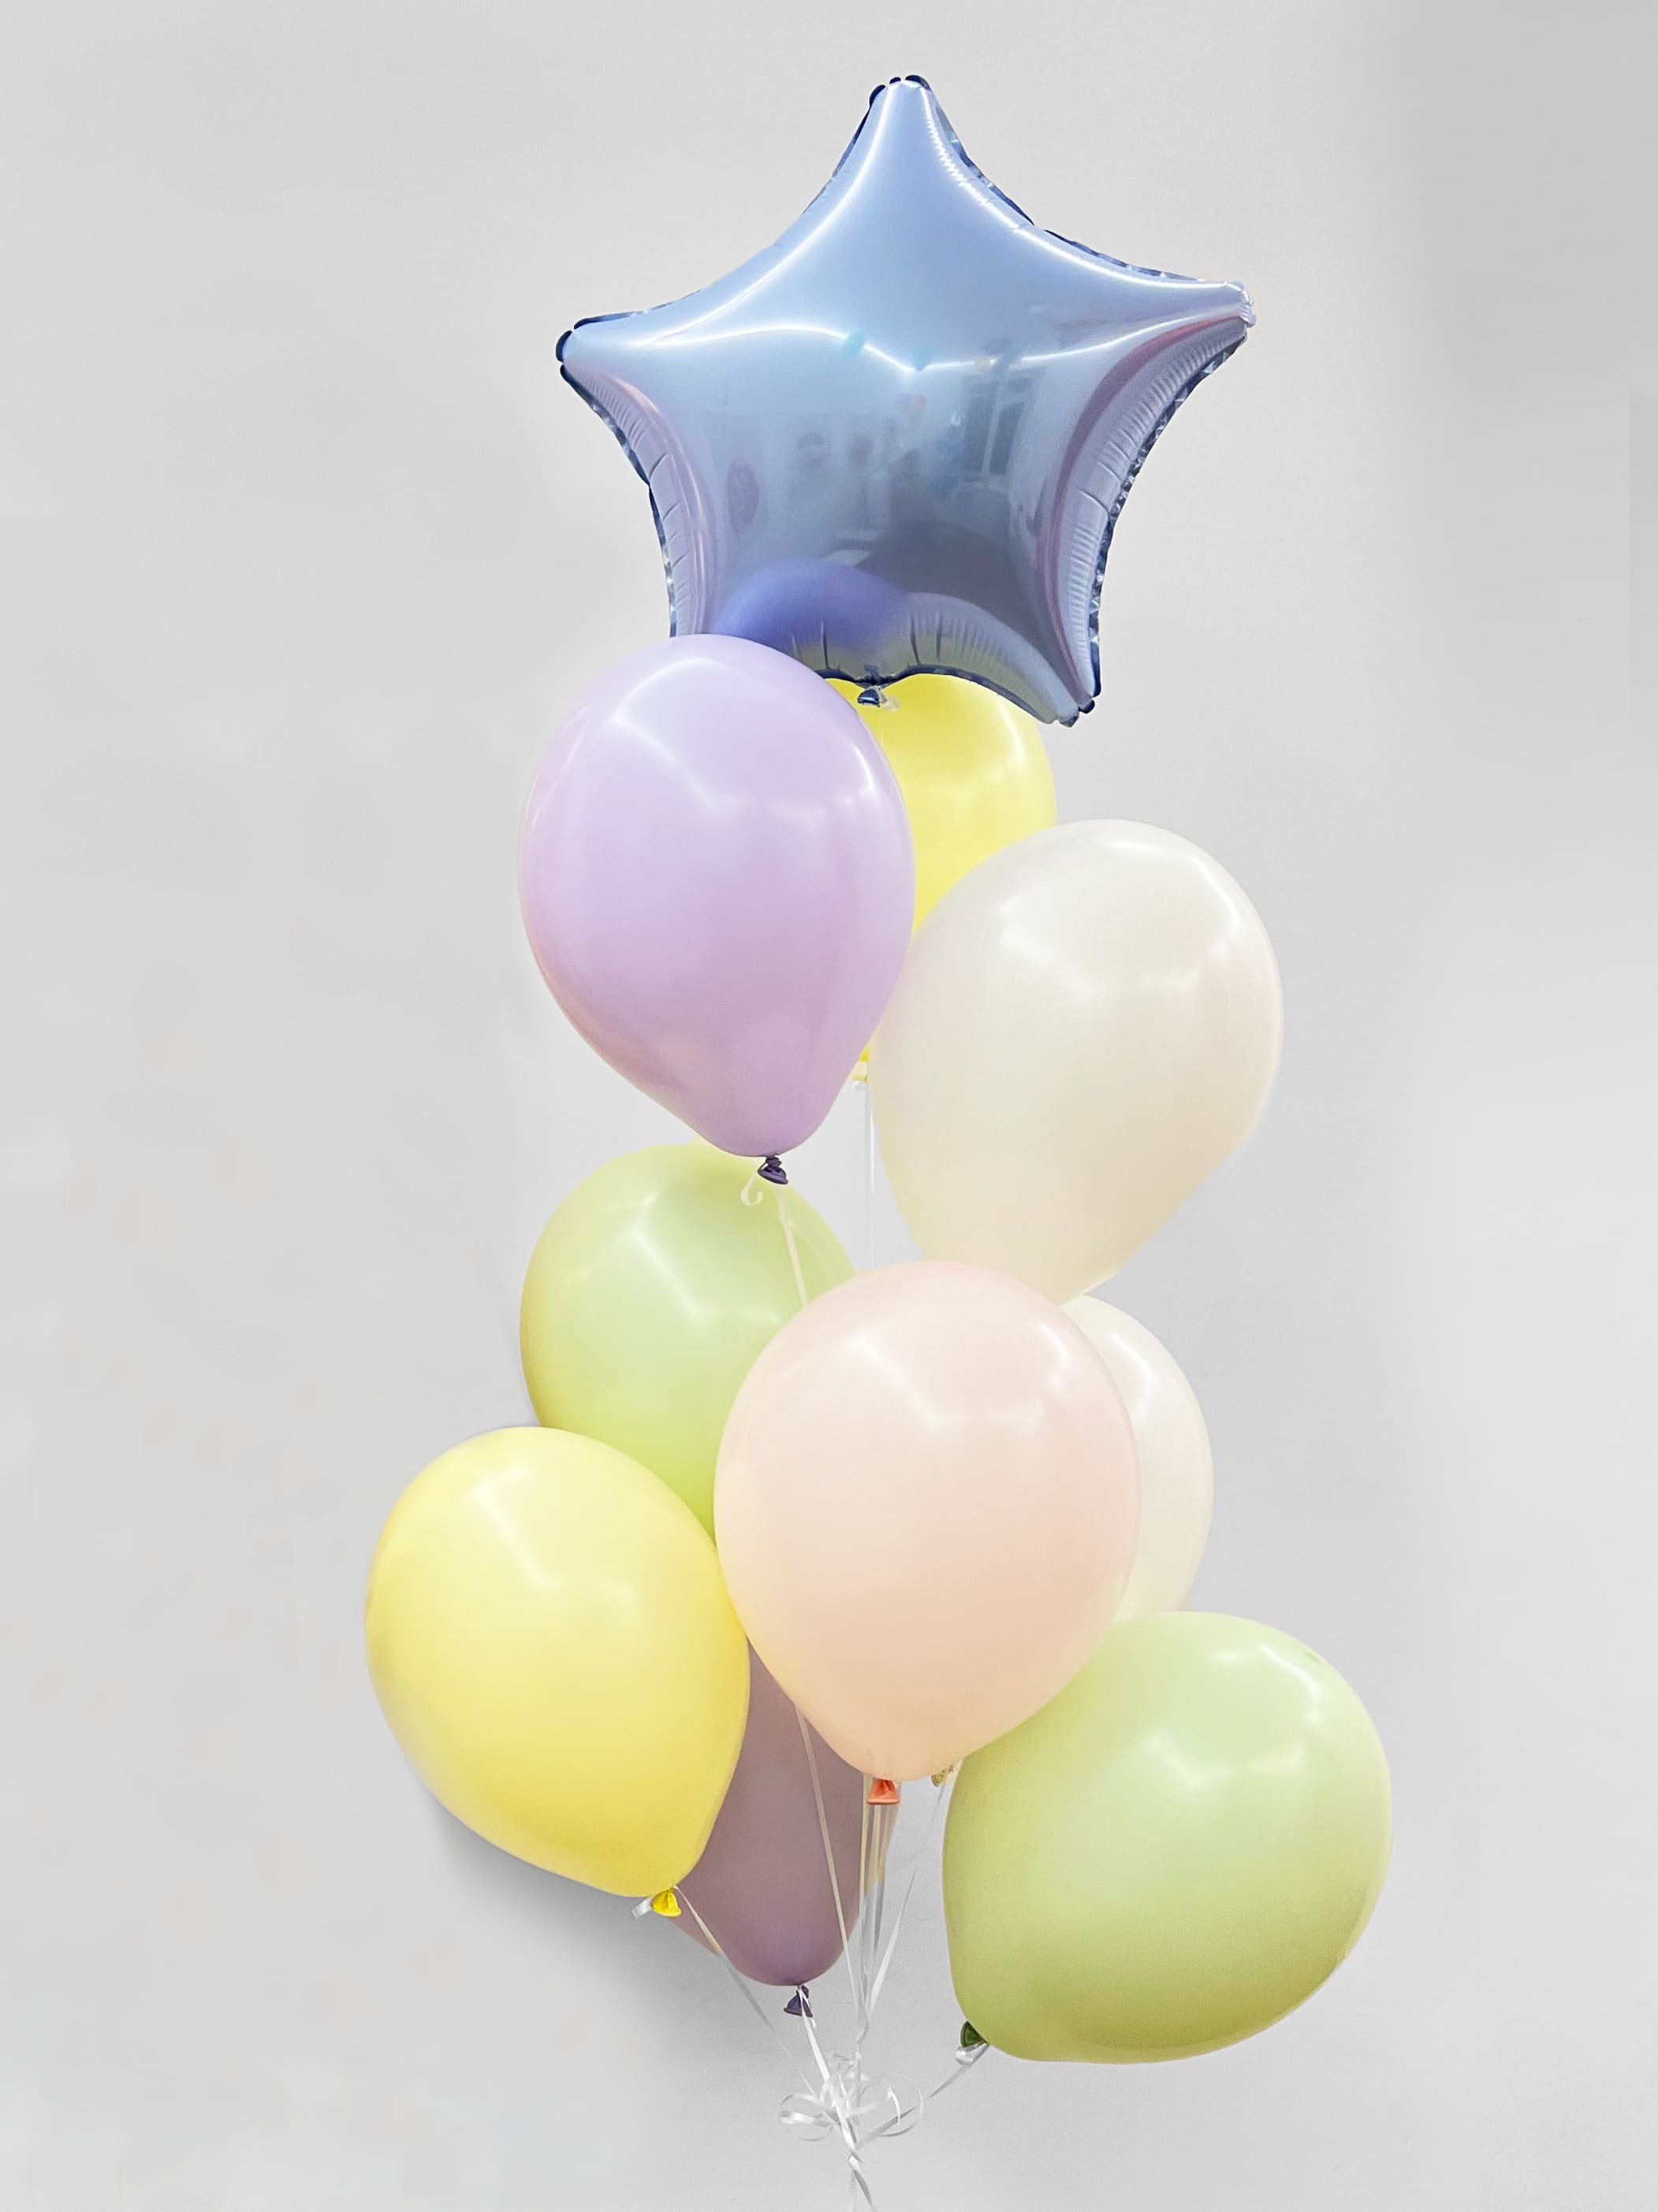 фонтан из воздушных шаров на день рождения пиво Фонтан из шаров «Пастель» - 10 шаров + шар Bubbles (сфера) - серебряные конфетти